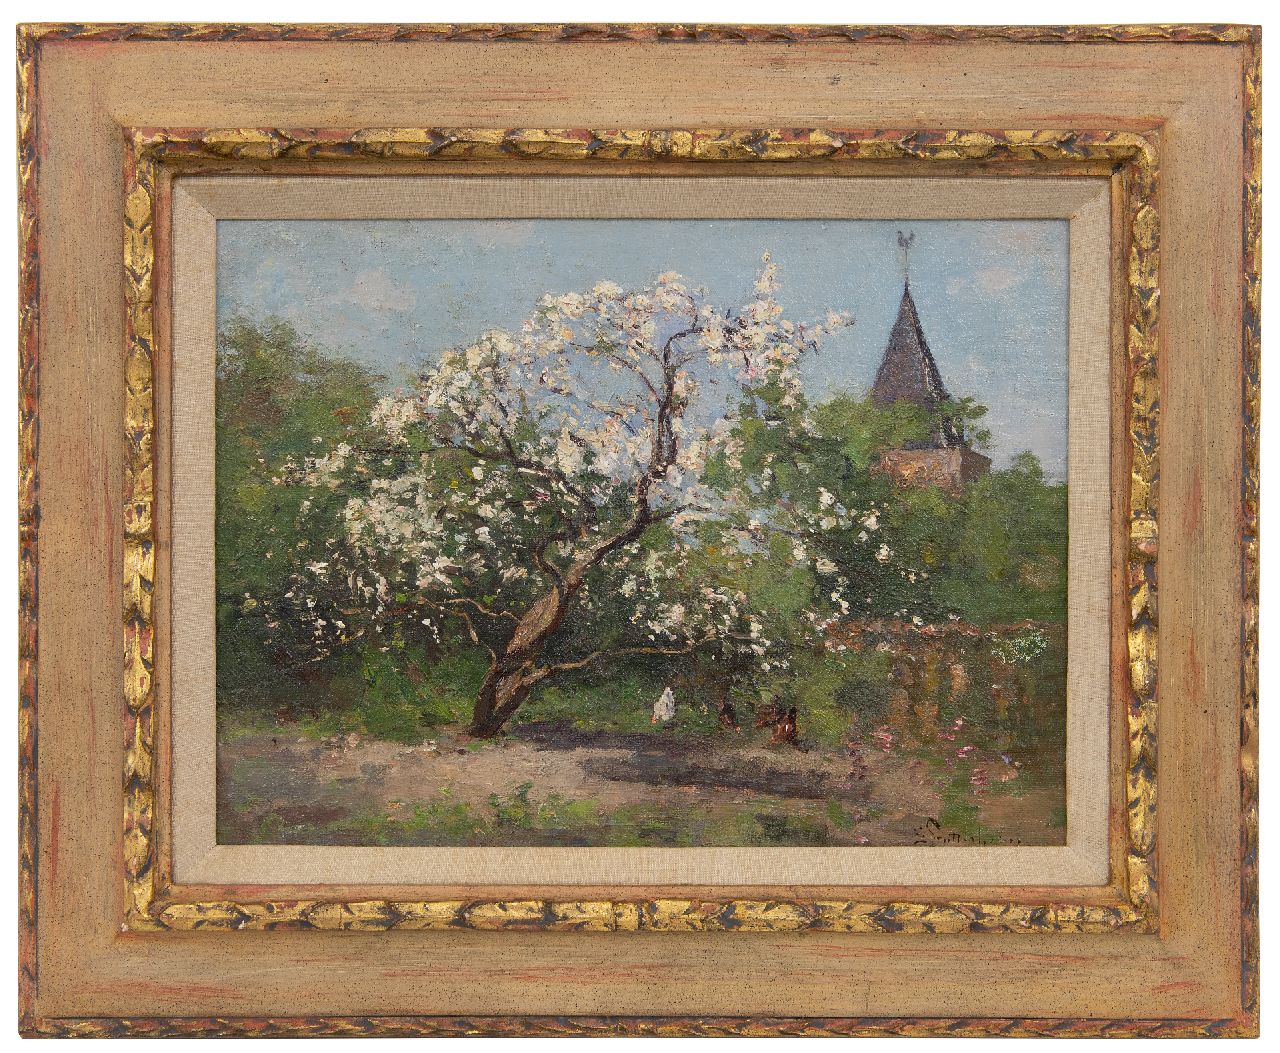 Stutterheim L.P.  | Lodewijk Philippus 'Louis' Stutterheim | Schilderijen te koop aangeboden | Bloeiende magnolia, olieverf op doek 30,5 x 40,3 cm, gesigneerd rechtsonder